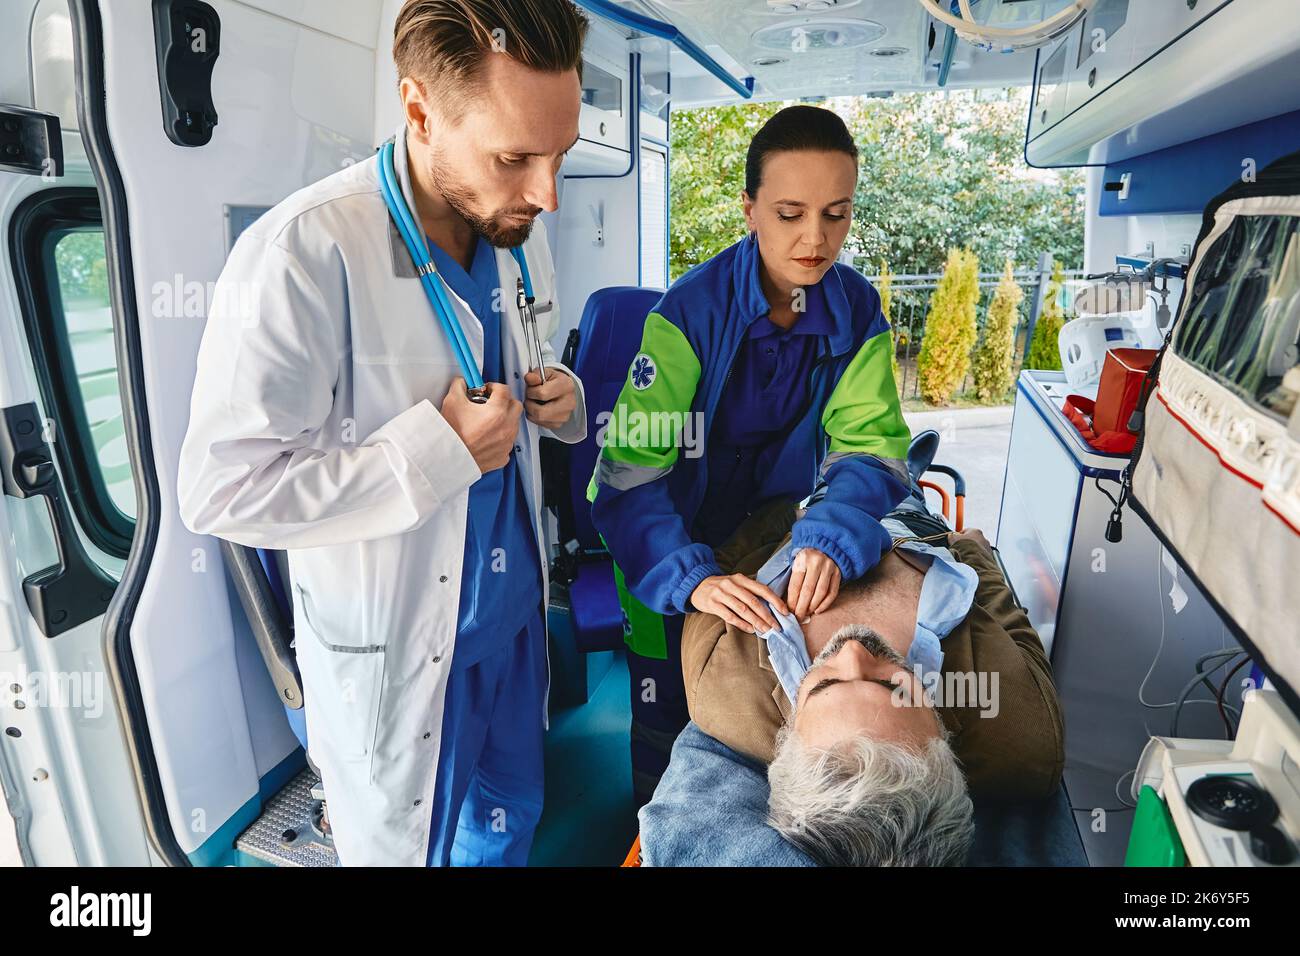 Sanitäter in Anwesenheit eines Arztes, der EKG-Elektroden an der Brust des männlichen Patienten befestigt, um ihm eine Elektrokardiographie im Krankenwagen zu ermöglichen. EMS Stockfoto